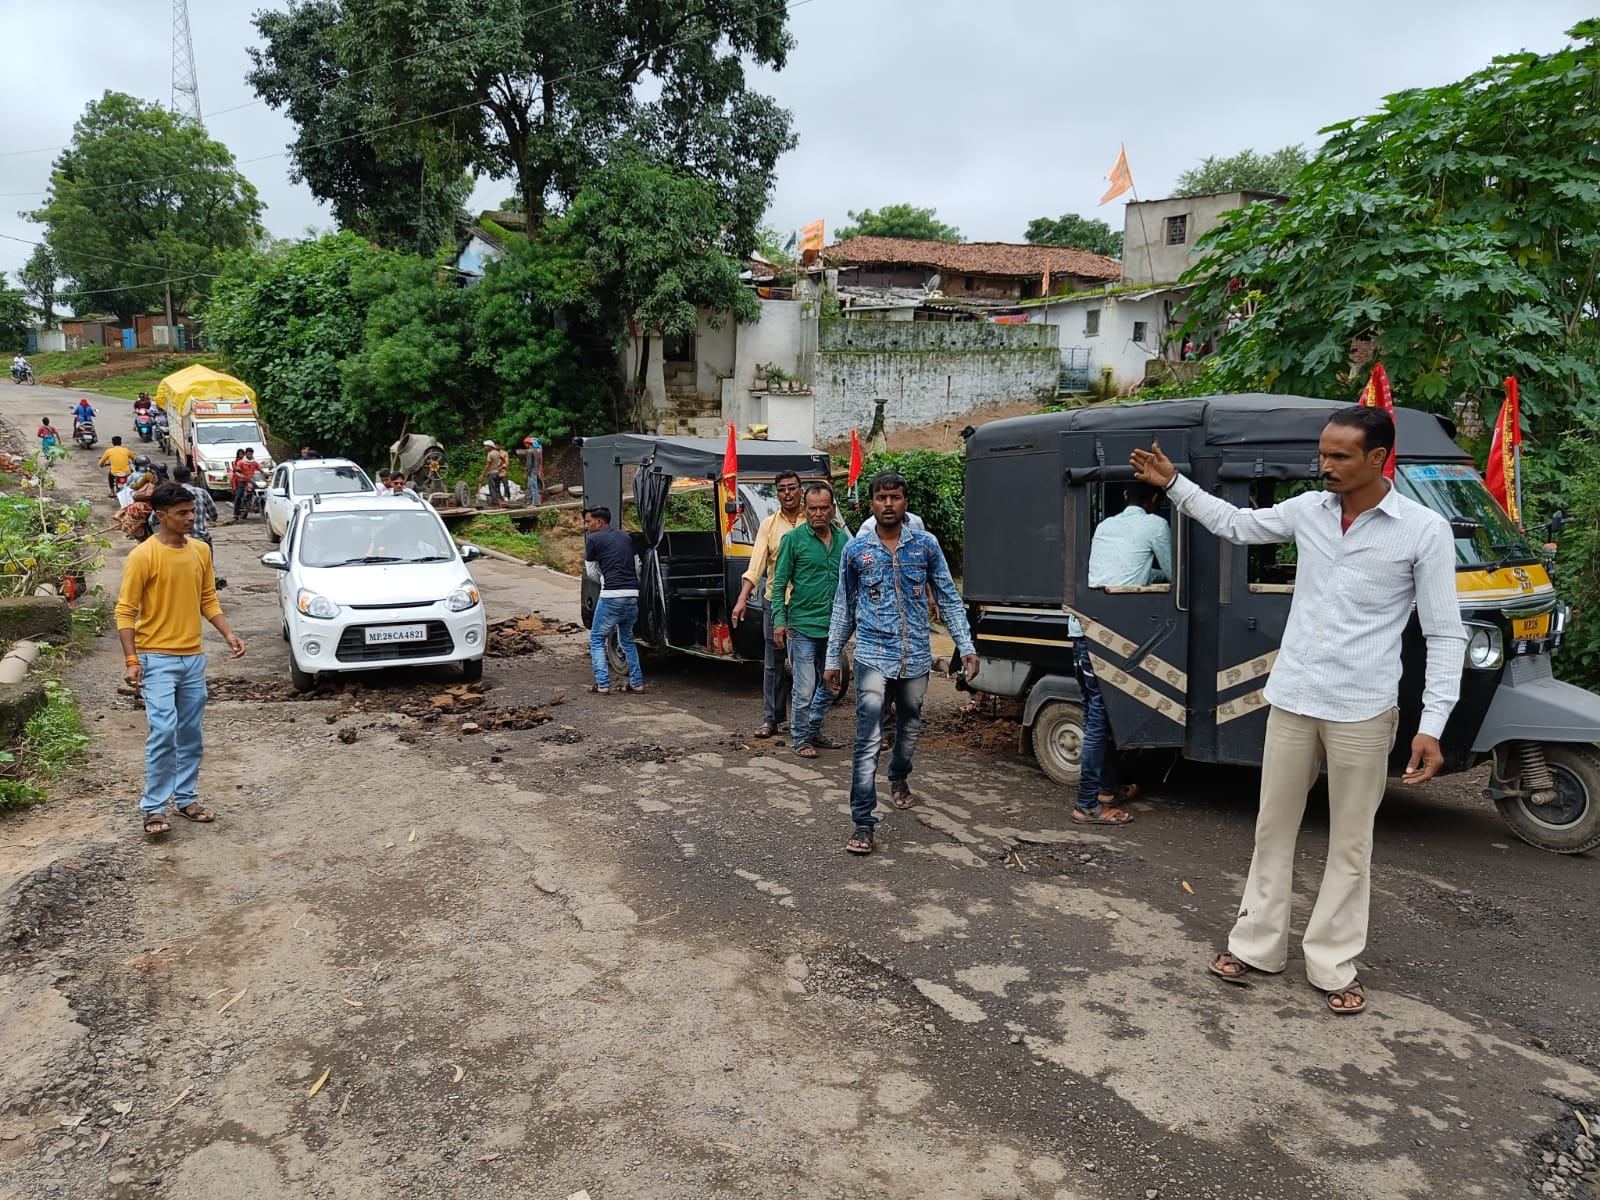 बरसात में भारी परेशानी को देखते हुए आम जनता को राहत देने की कोशिश, ऑटो यूनियन ने रोड की मरम्मत का उठाया बीड़ा | New India Times